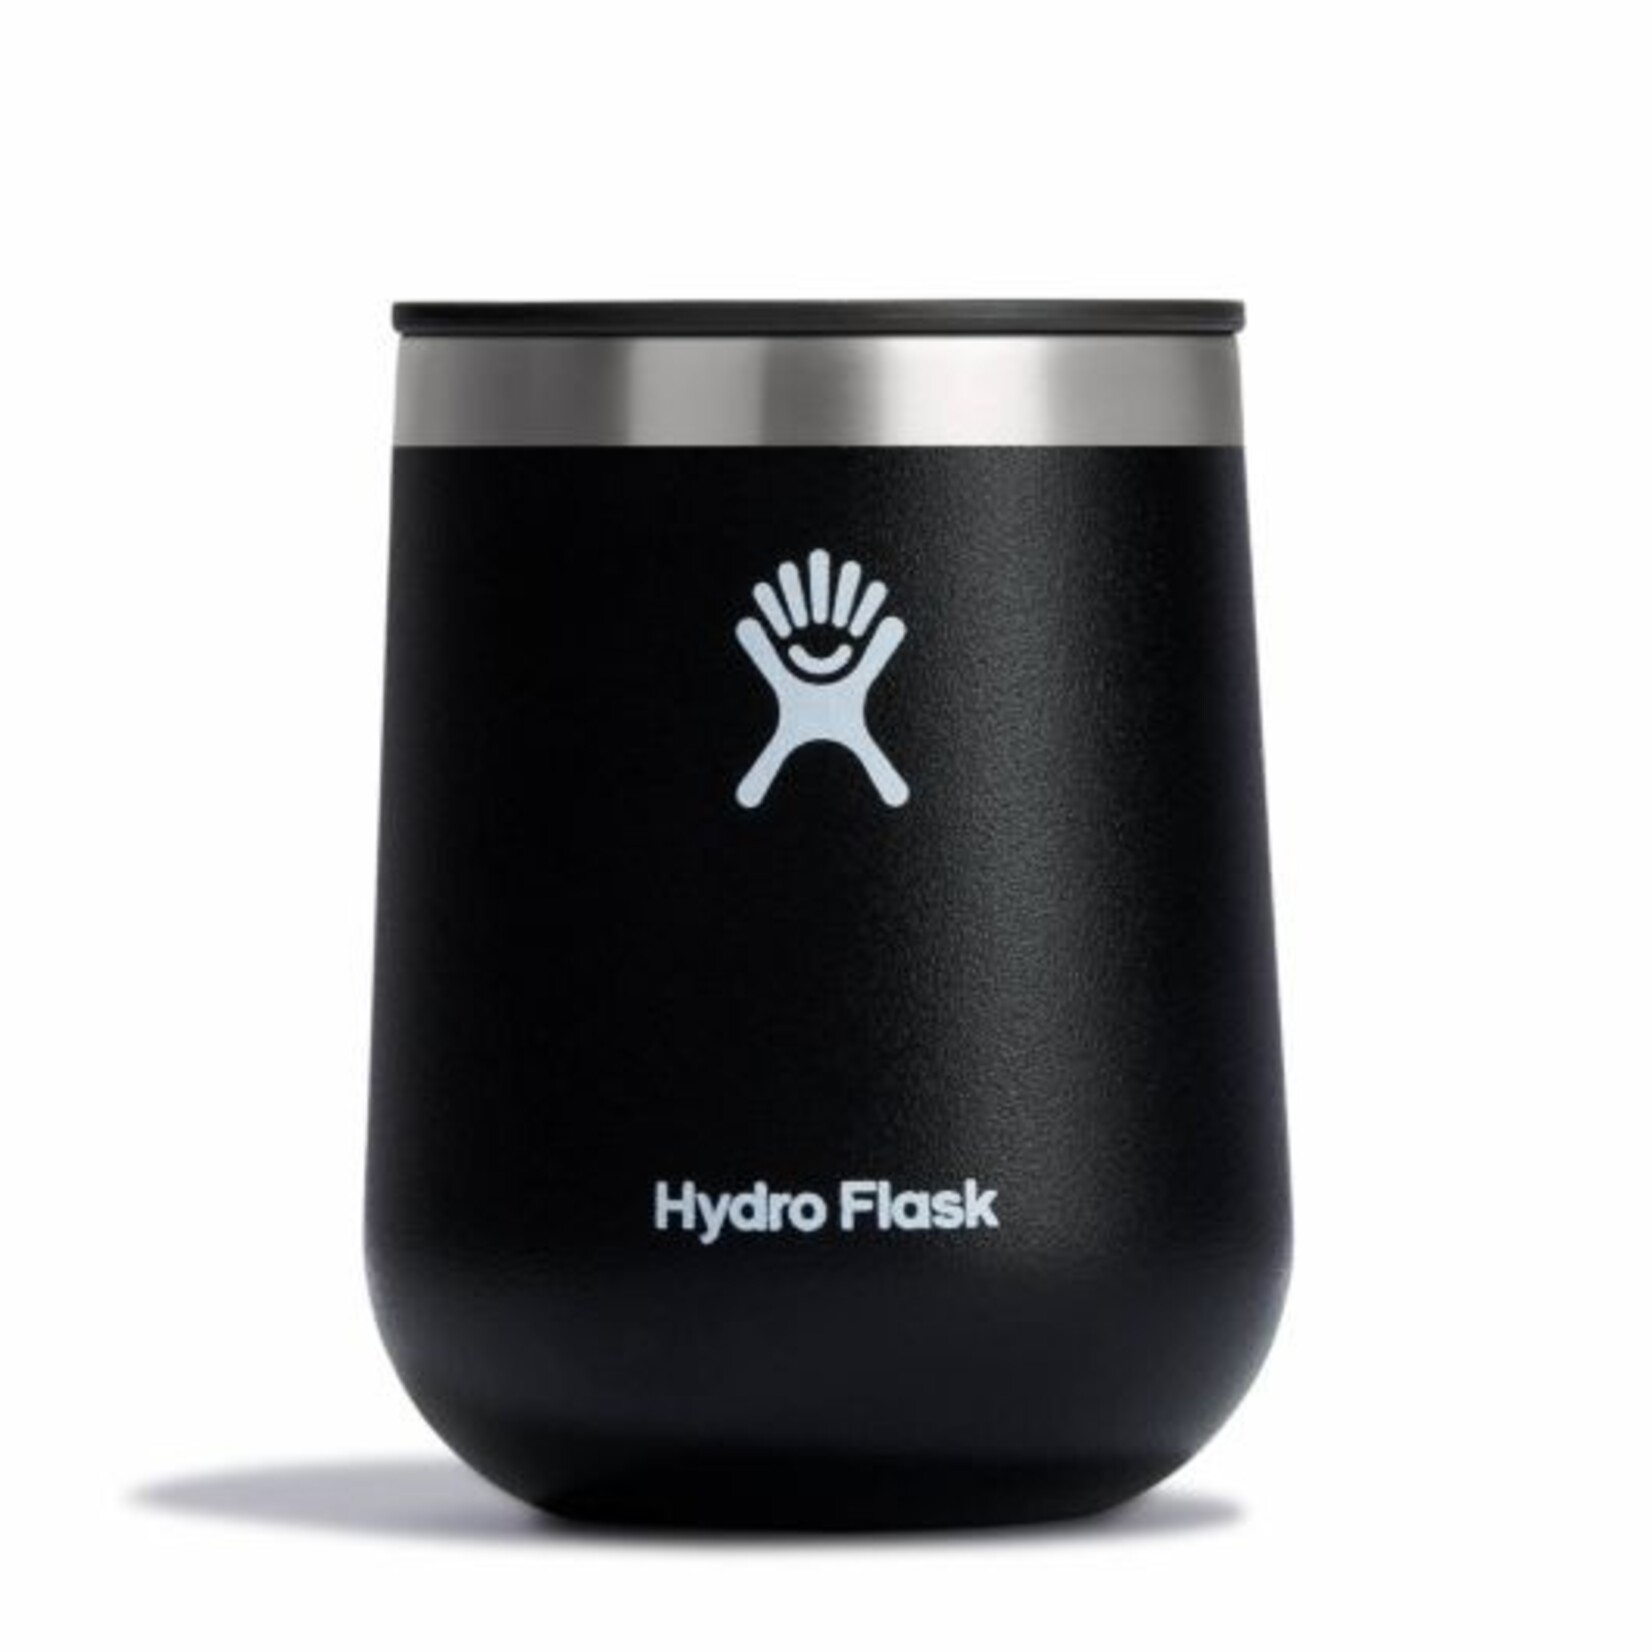 Hydro Flask 10oz wine tumbler